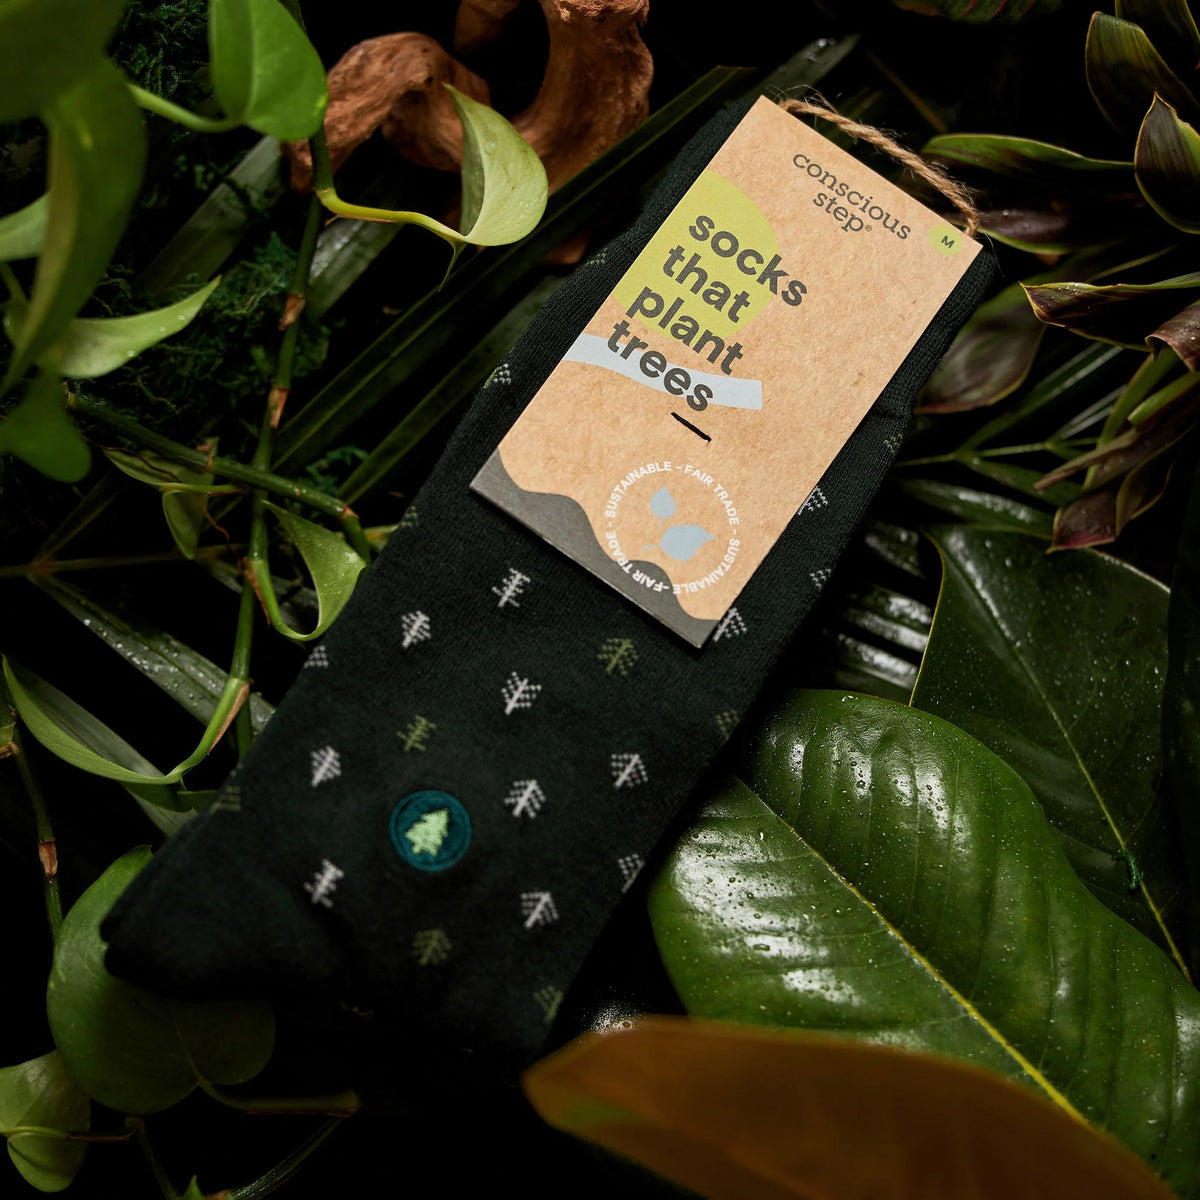 socks that plant trees (single pair)